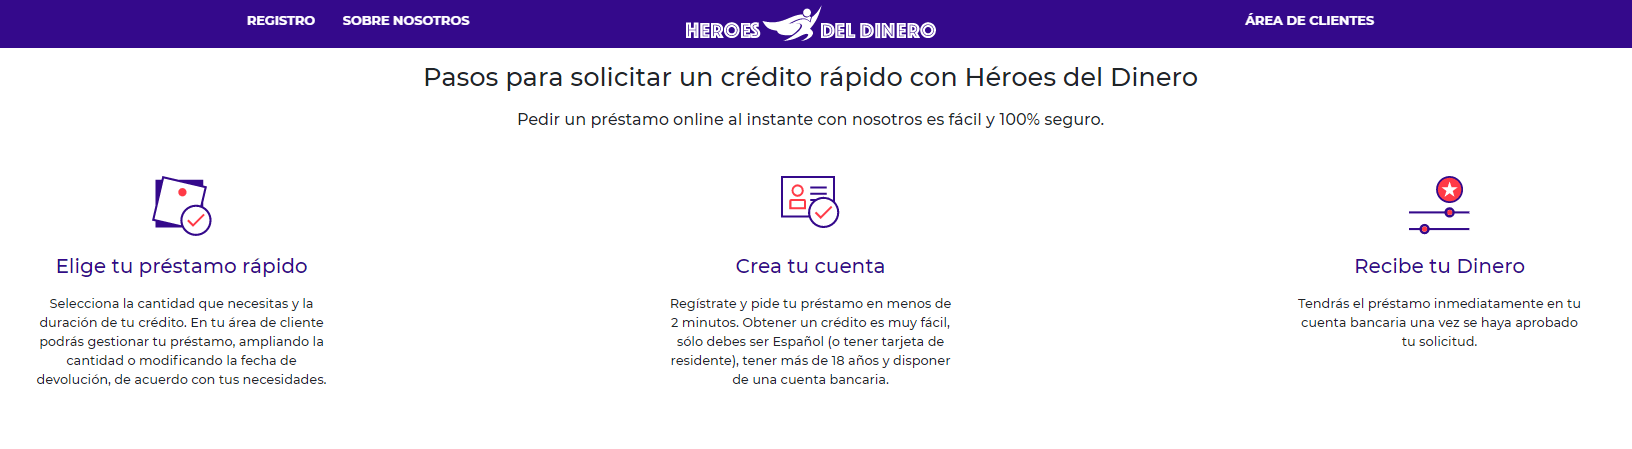 solicitud en Heroes del Dinero heroes del dinero heroes del dinero